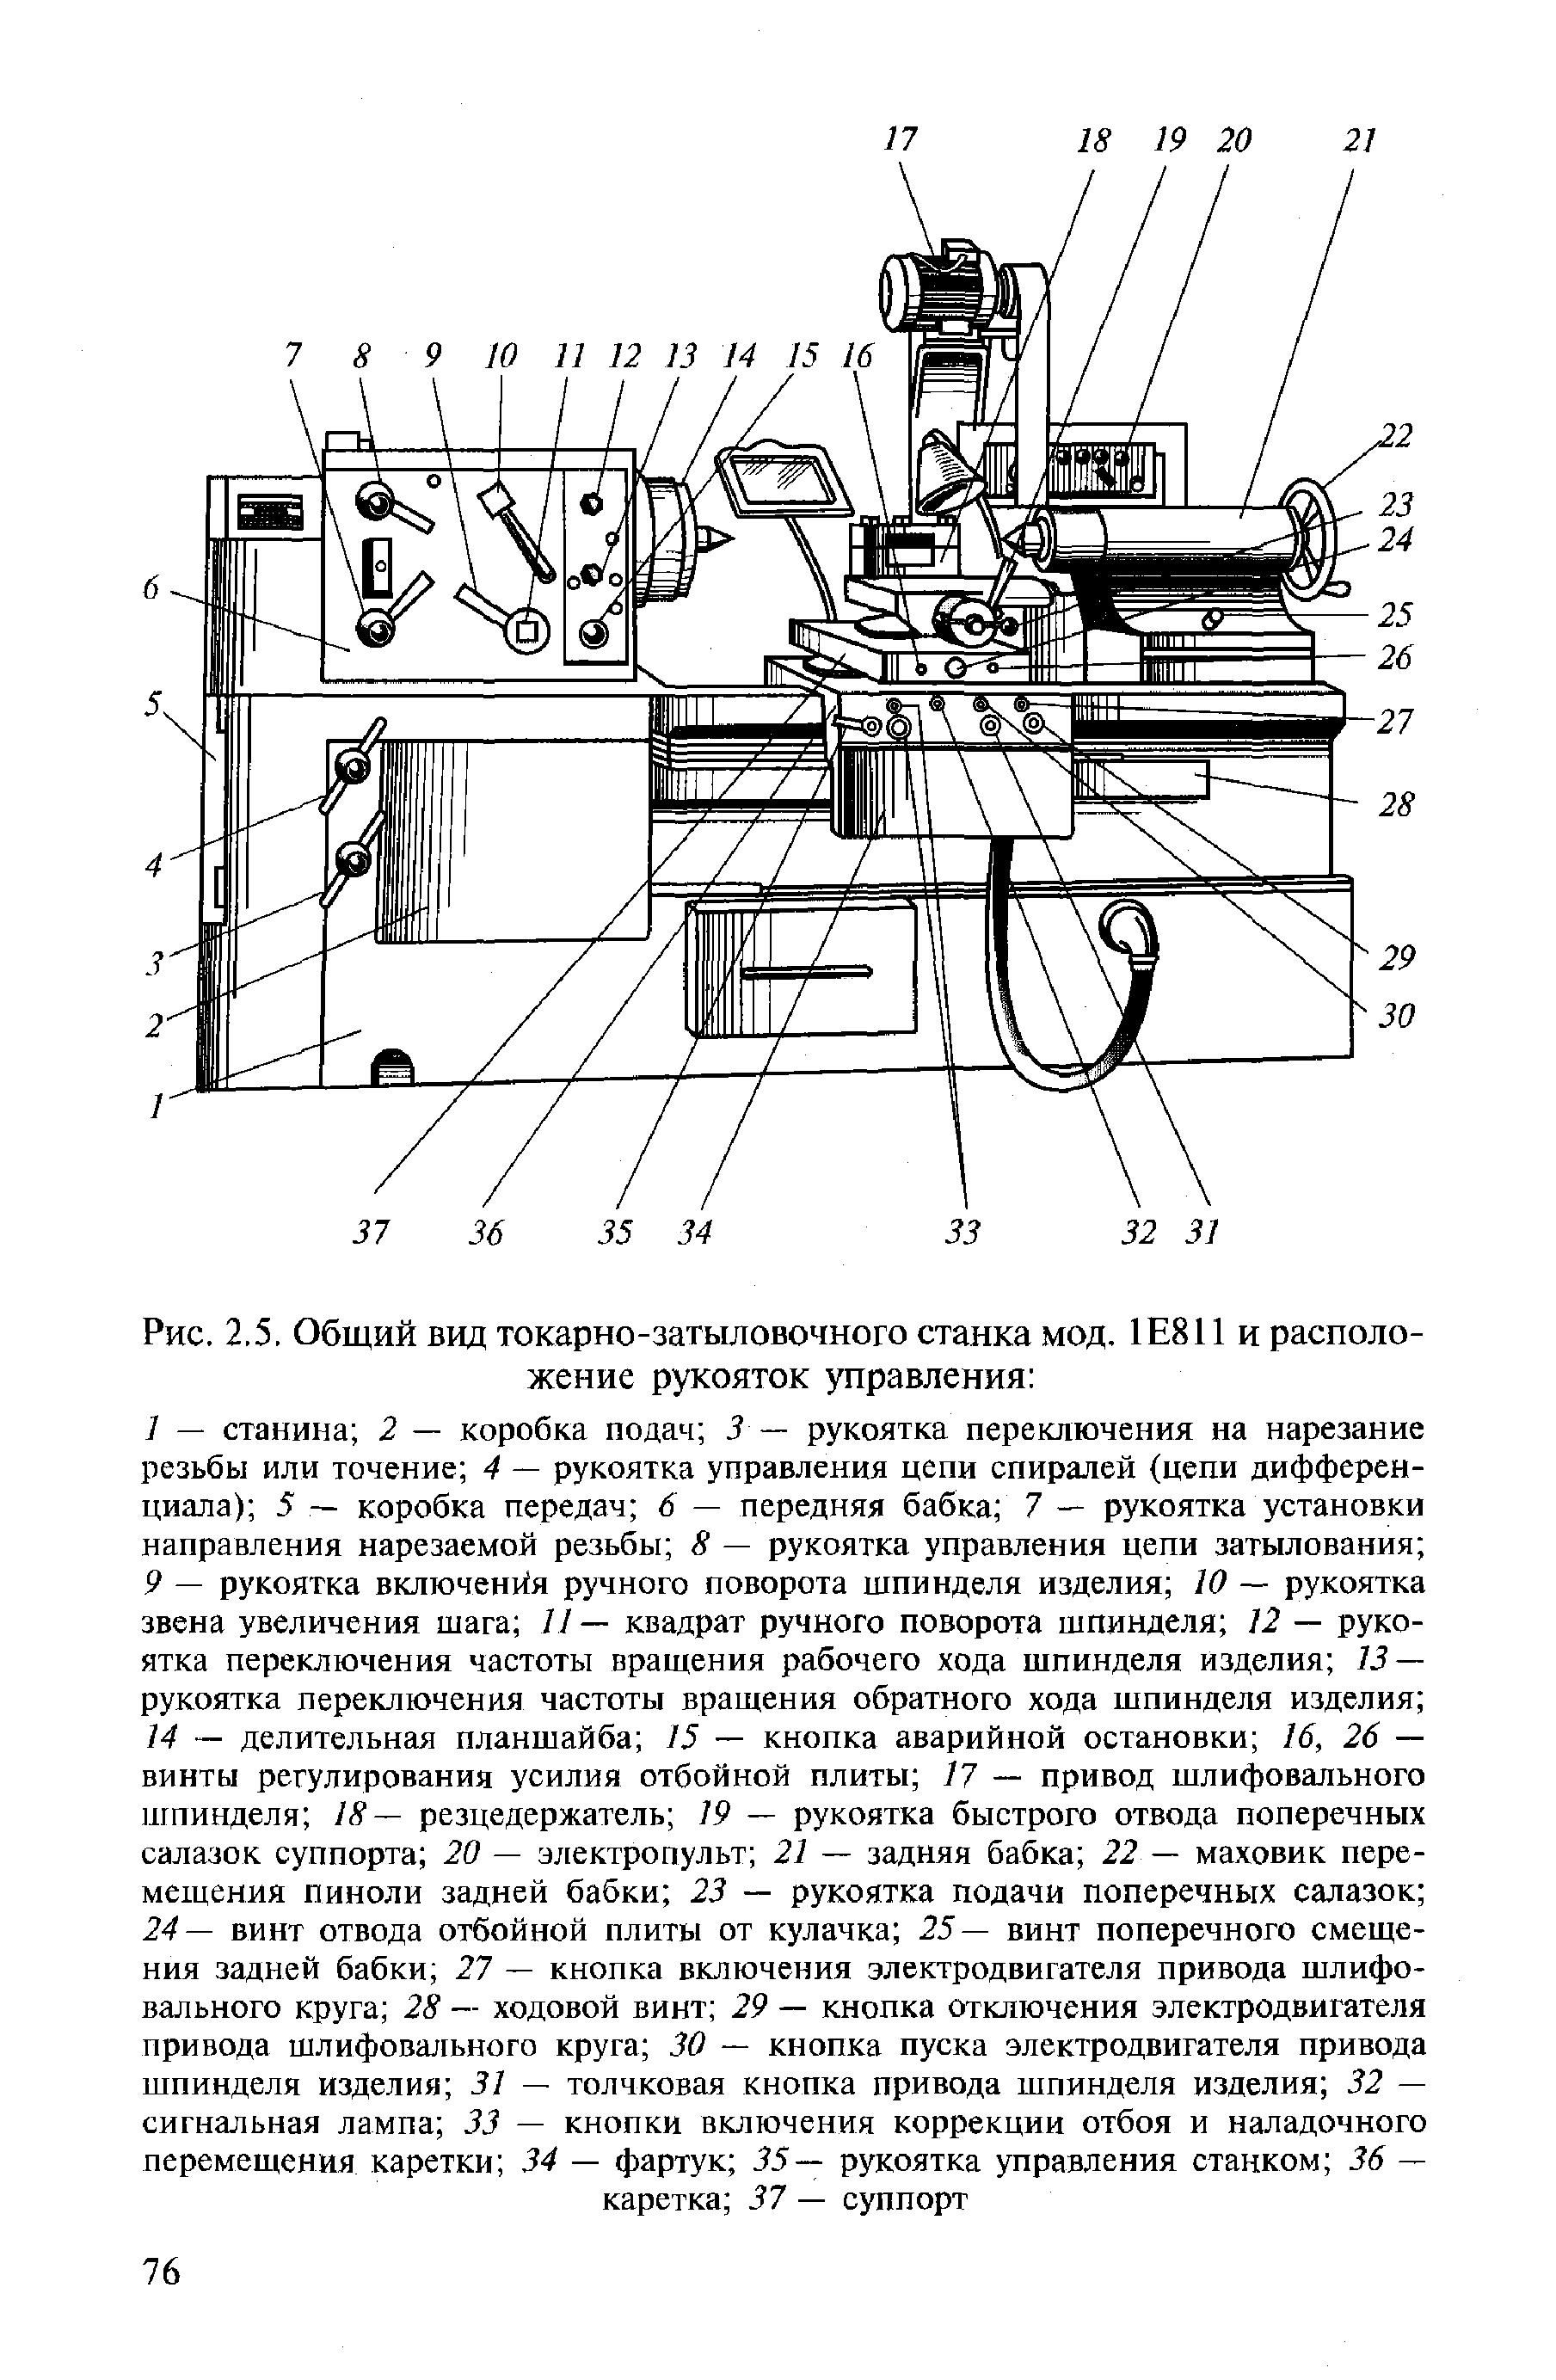 Рис. 2,5, Общий вид токарно-затыловочного станка мод. 1Е811 и расположение рукояток управления 
